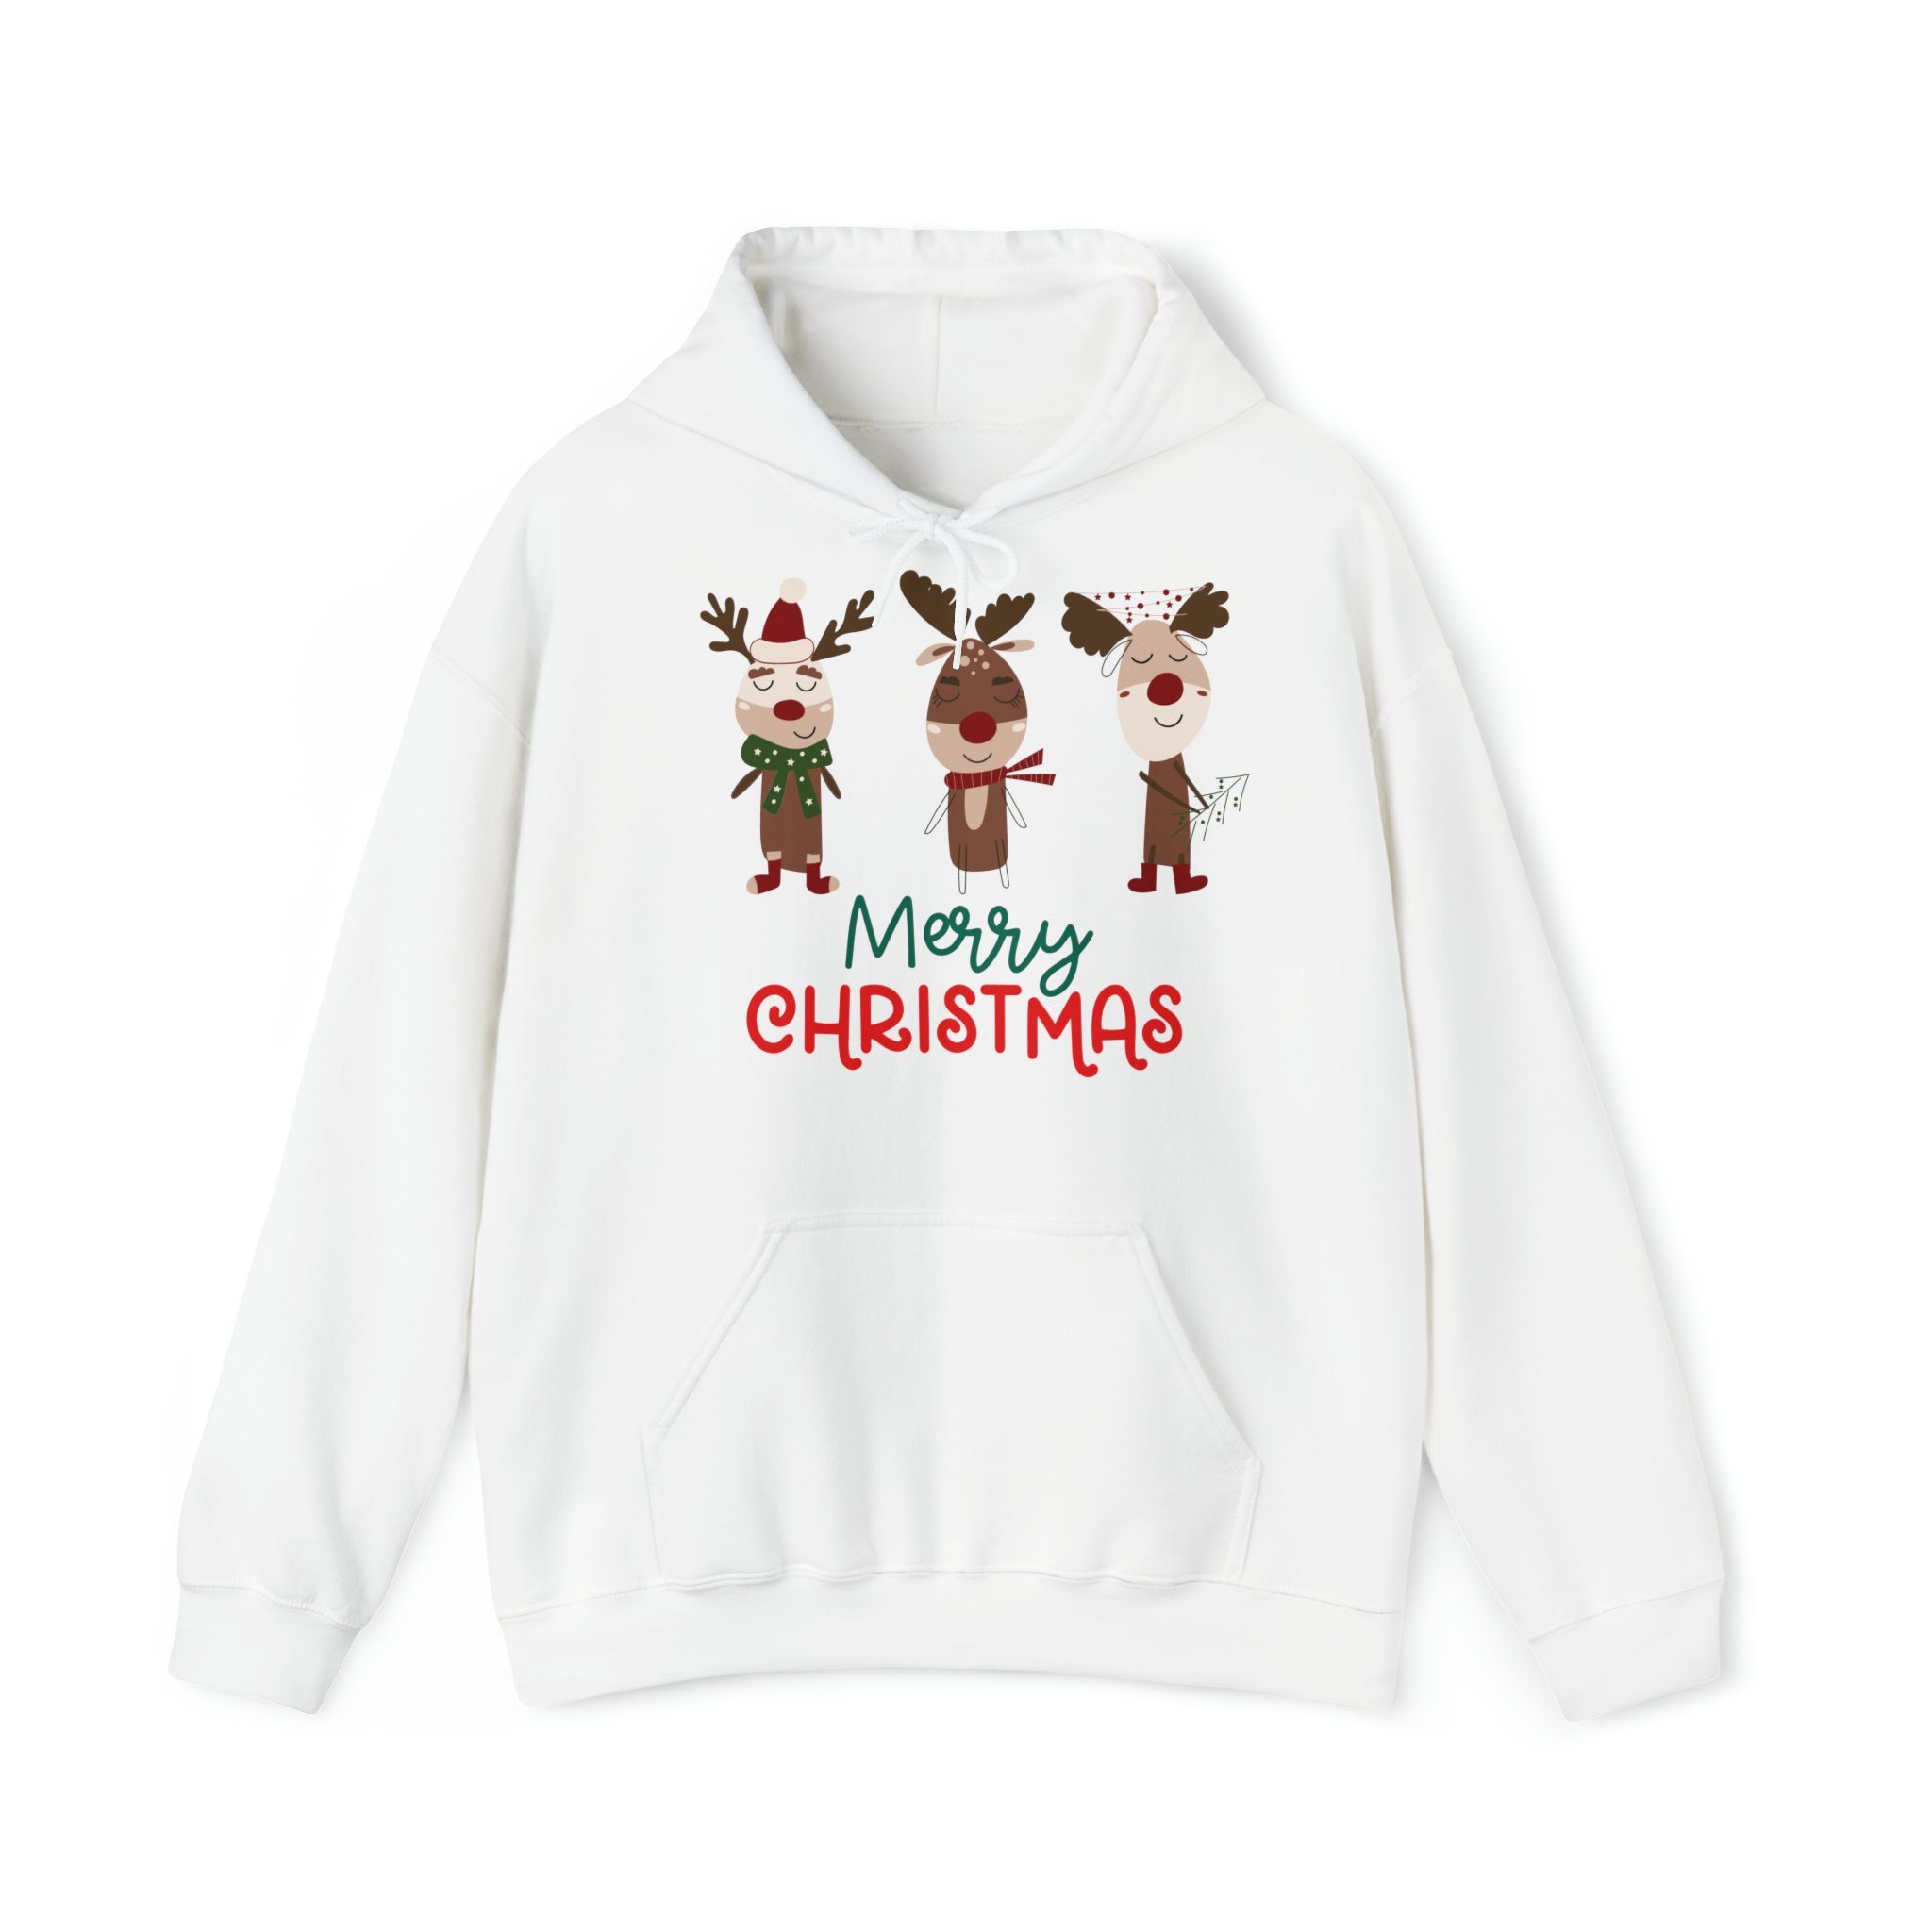 Quality Elegance Weihnachtssweatshirt Cute Reindeer Christmas Hoodie, weihnachtspullover damen herren White